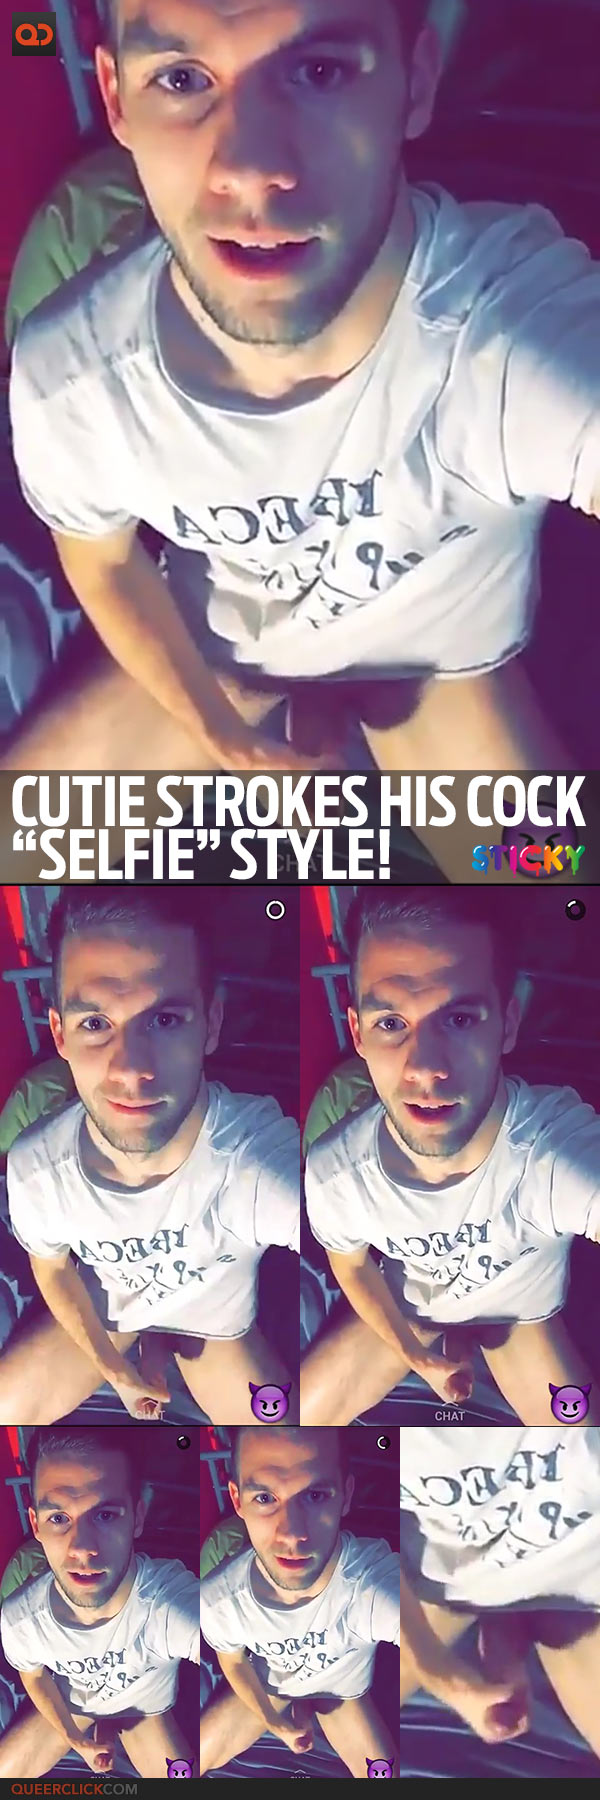 Cutie Strokes His Cock “Selfie” Style!